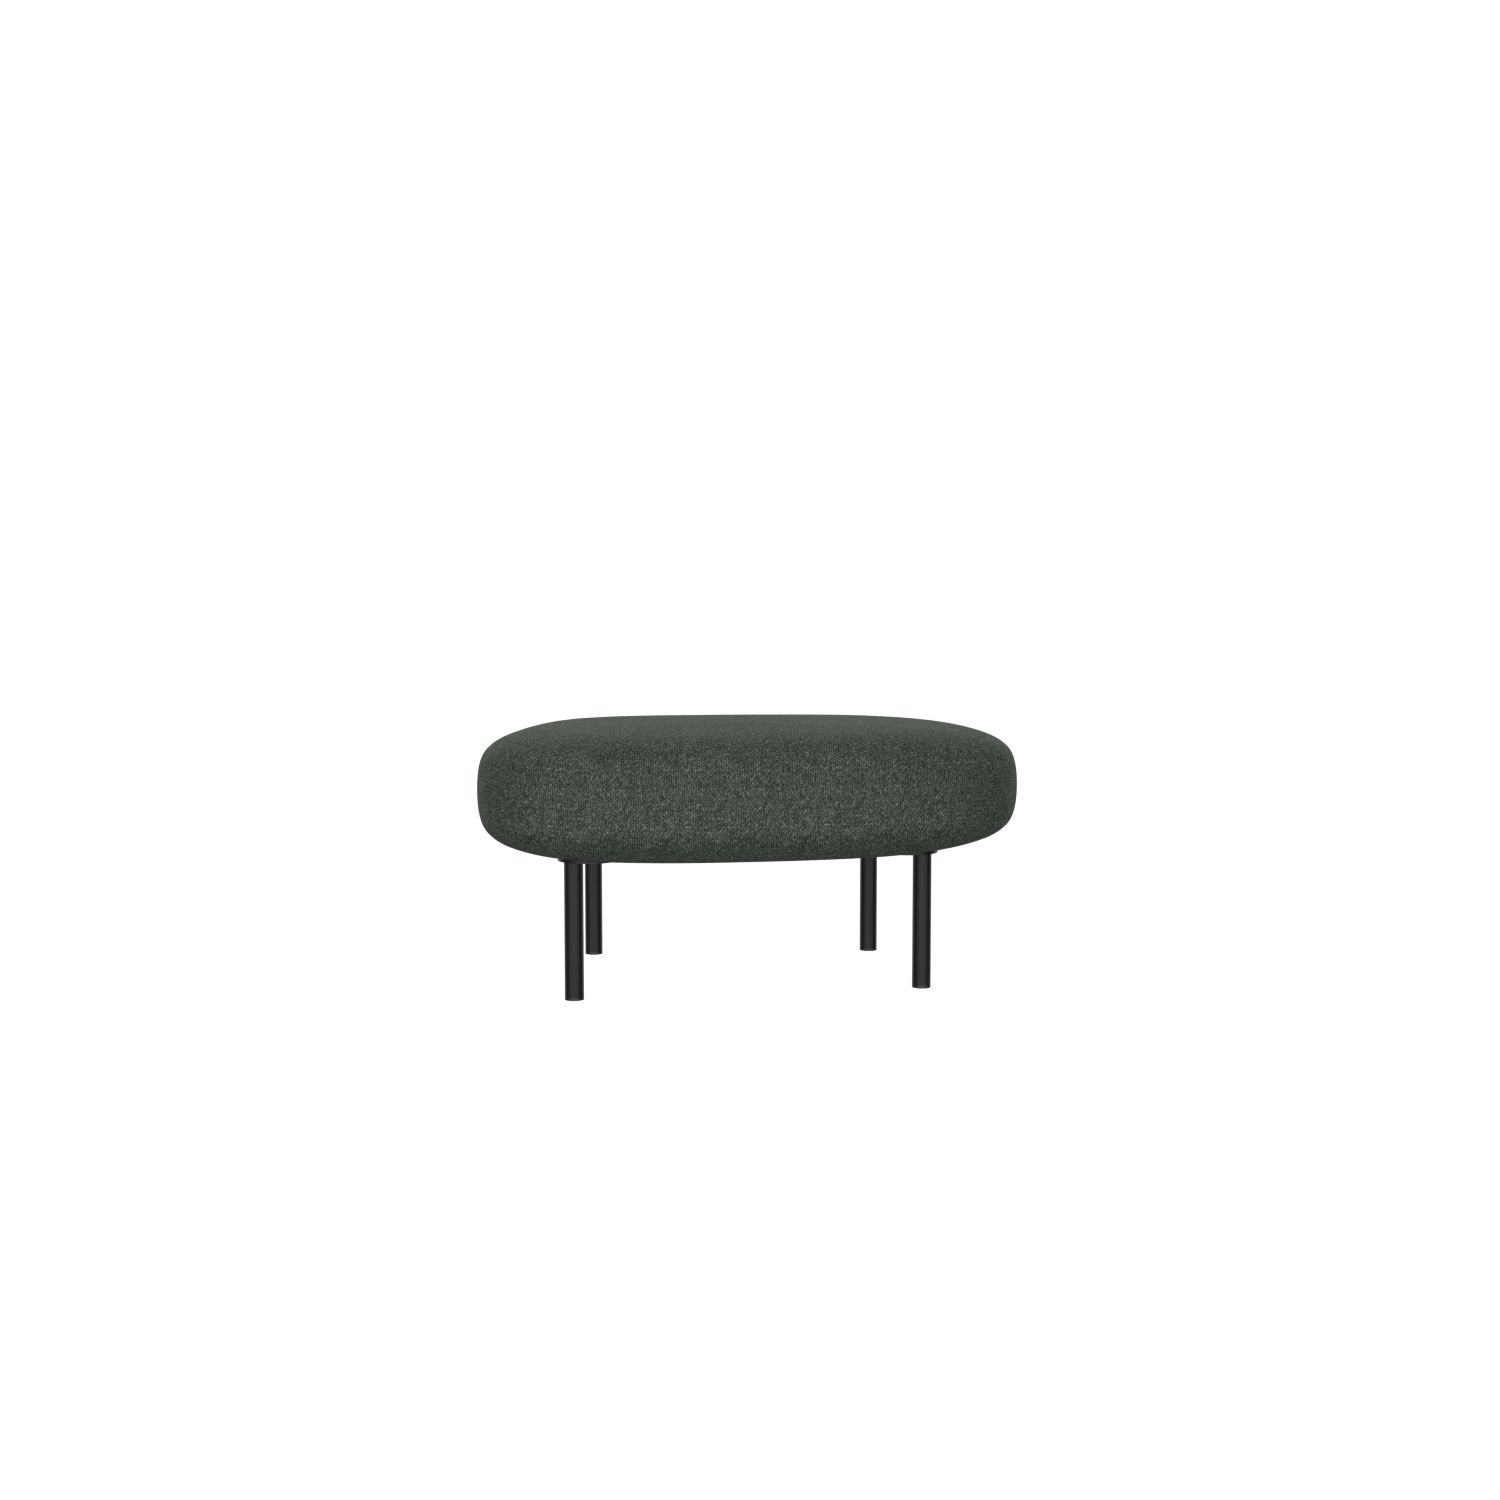 lensvelt studio stefan scholten sofa ottoman 90x70 cm middle lounge part moss summer green 38 frame black ral9005